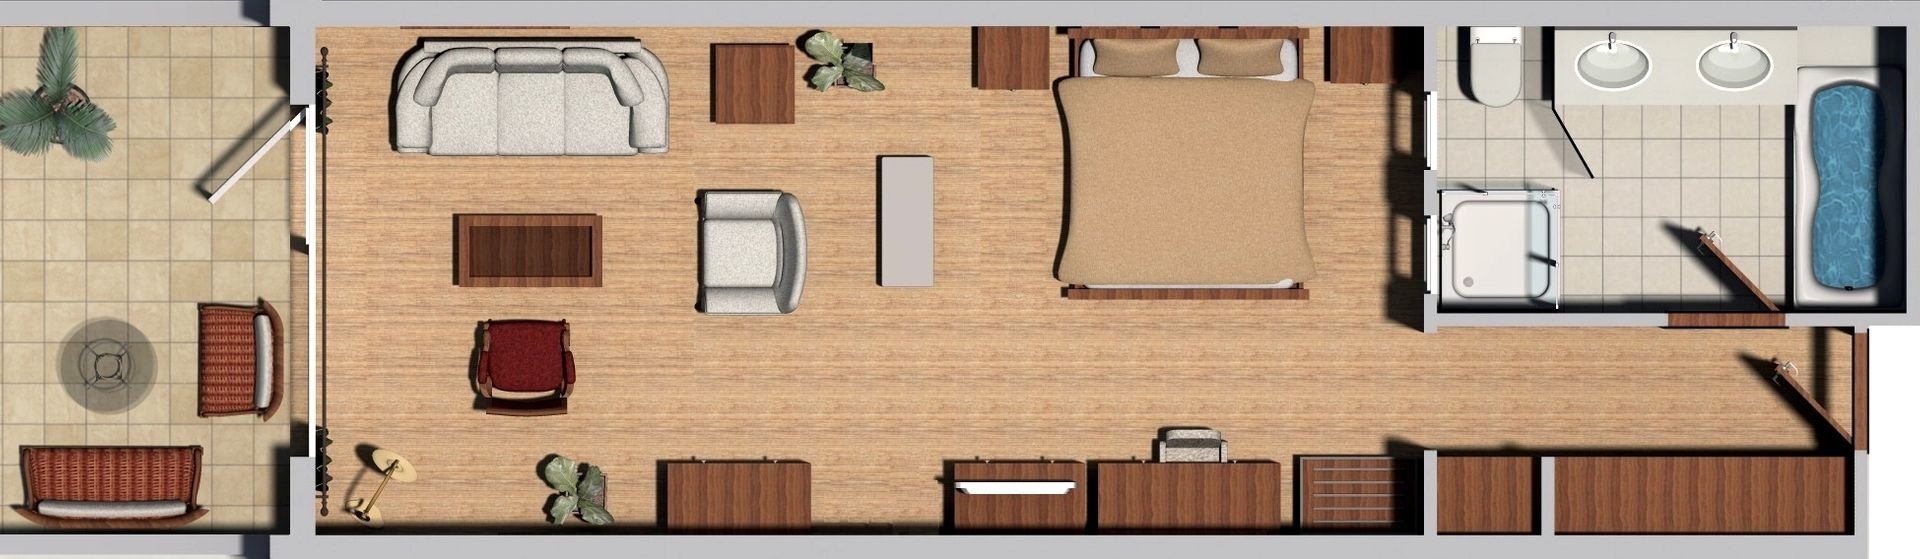 deluxe-junior-suite-garden-view-floorplan